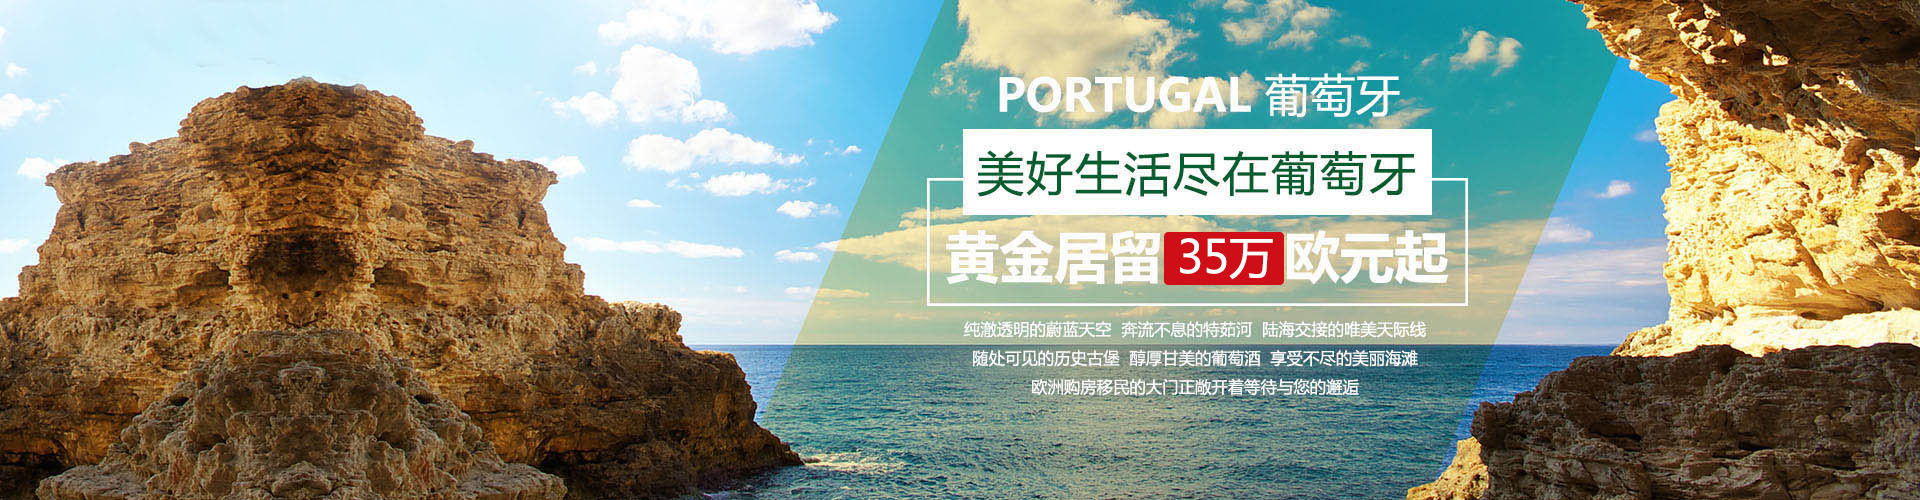 葡萄牙投资移民 葡萄牙房产 葡萄牙移民房产 移民房产 葡萄牙留学